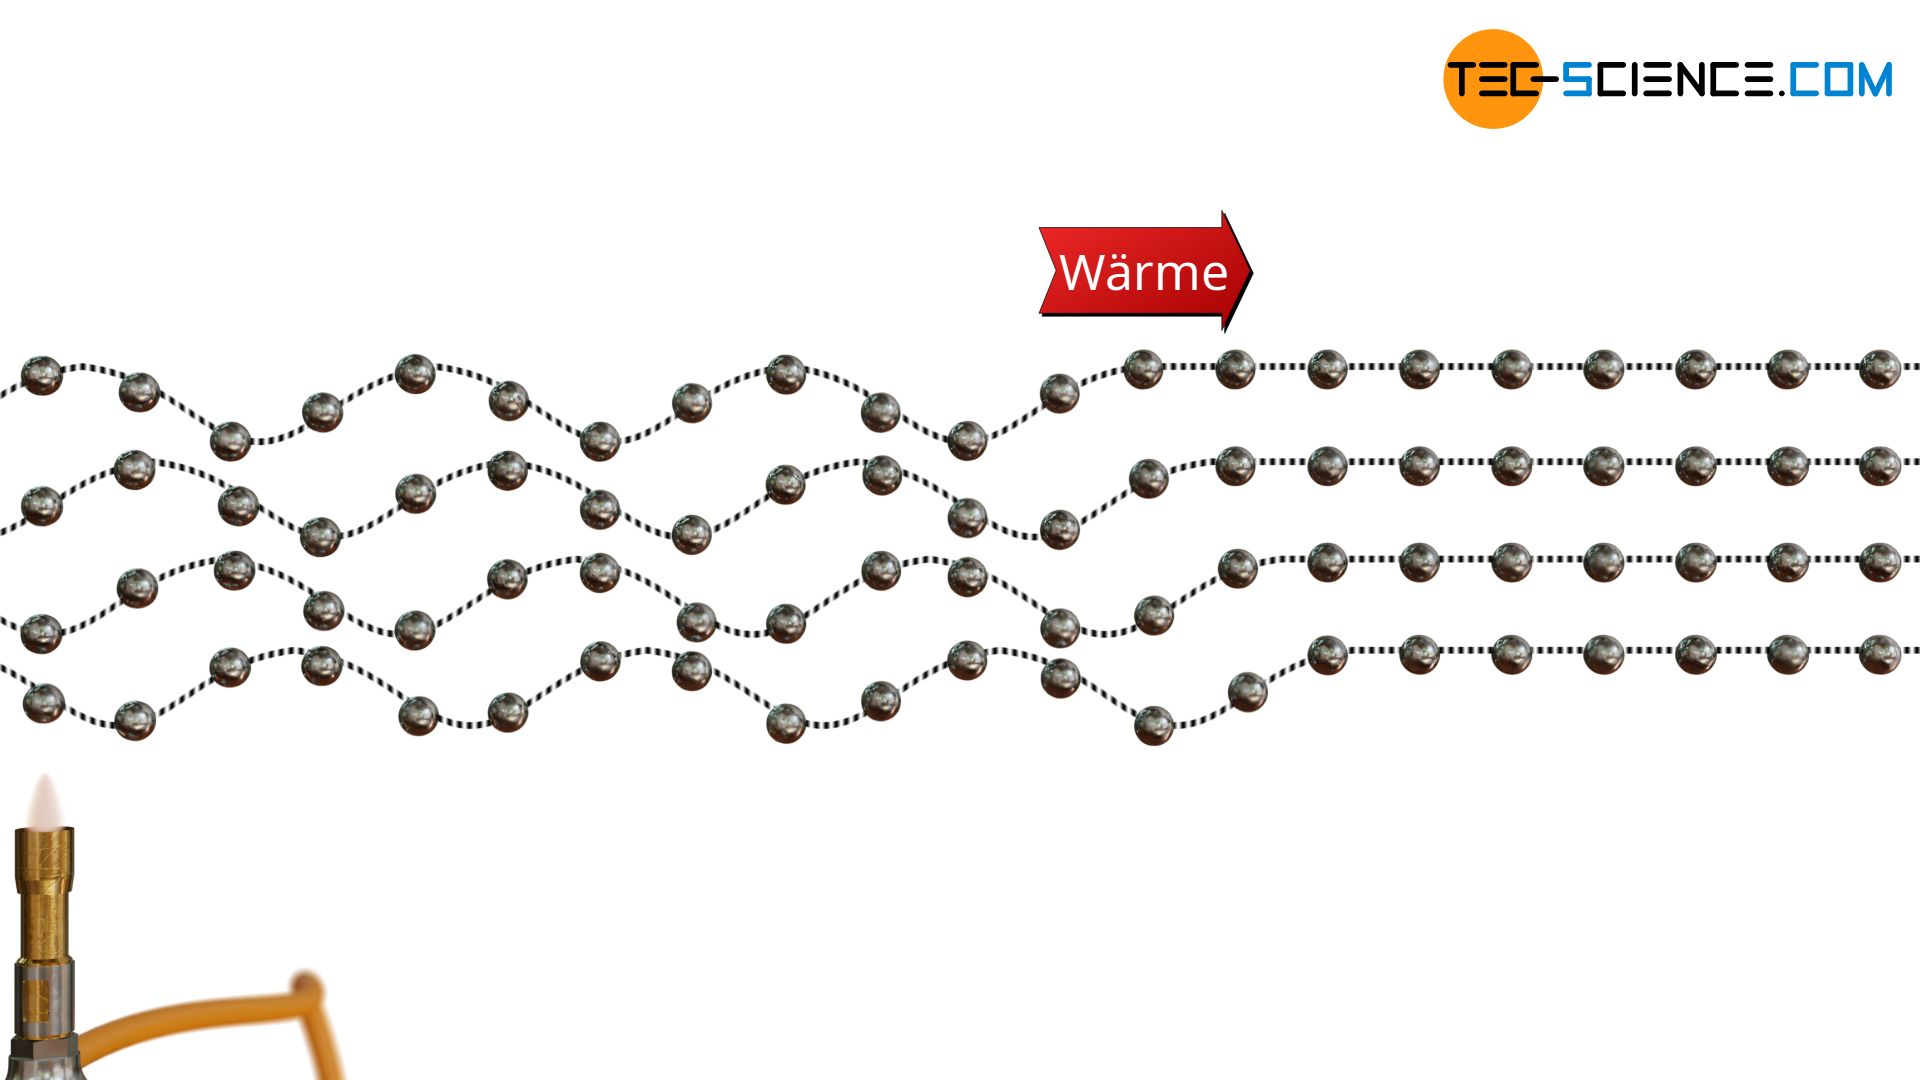 Prinzip der Wärmeleitung in Feststoffen durch Schwingung der Atome